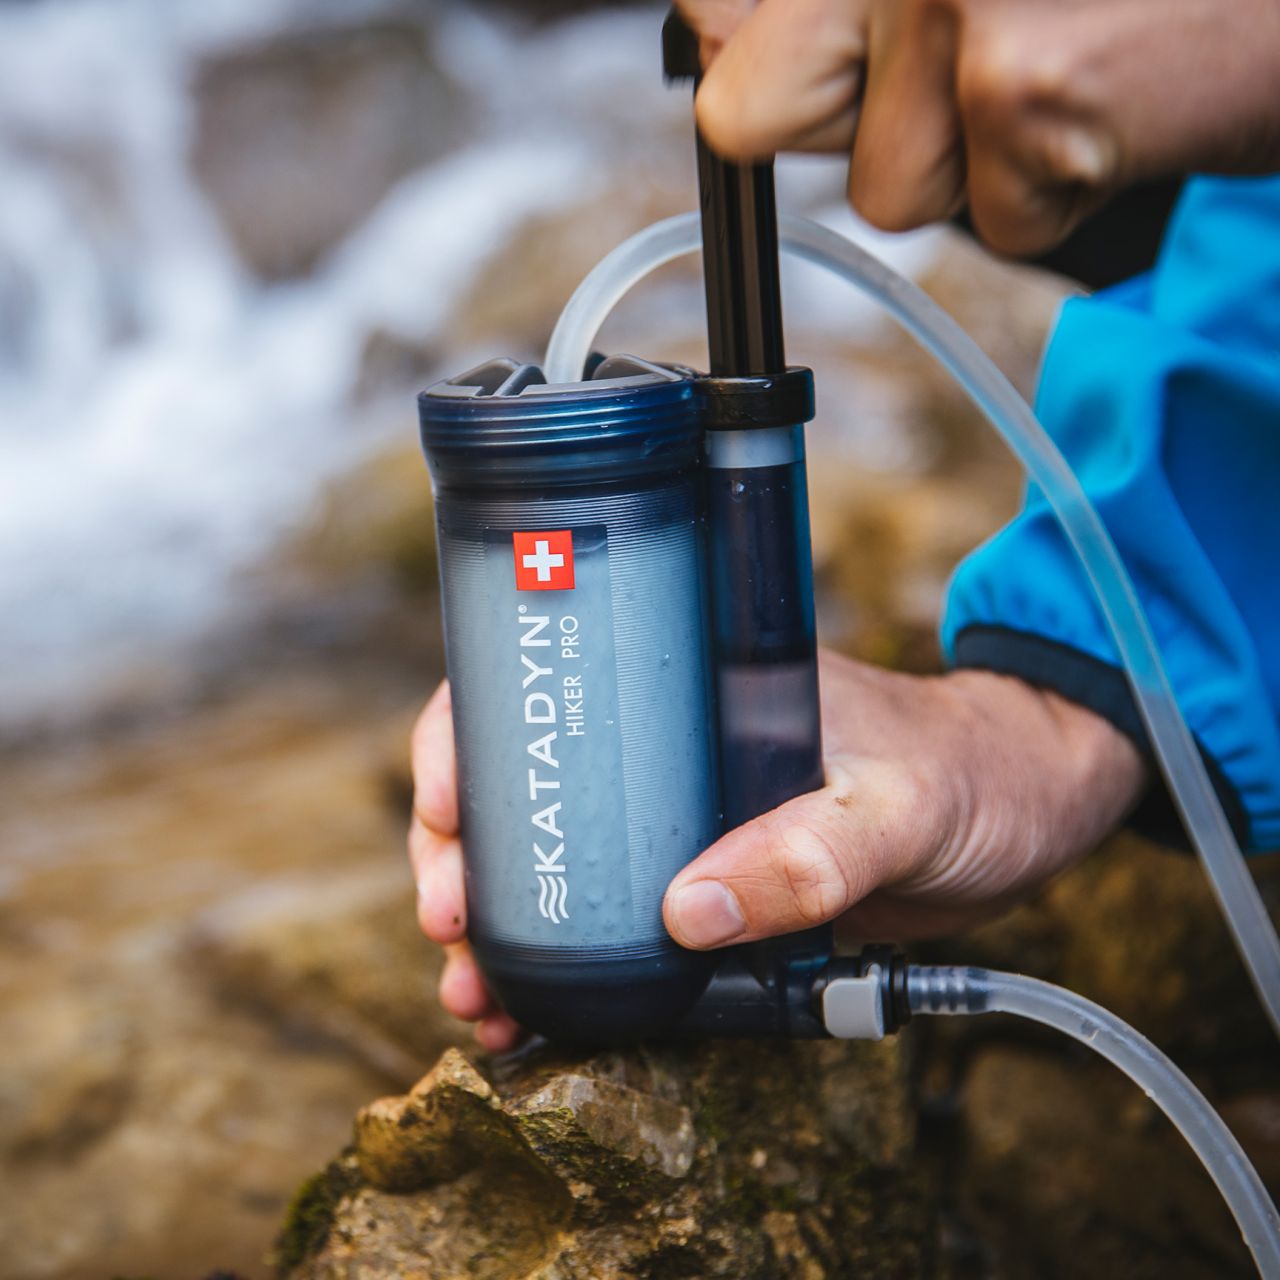 KATADYN Wasserfilter "Hiker Pro Filter" mit 1L/min Pumpleistung